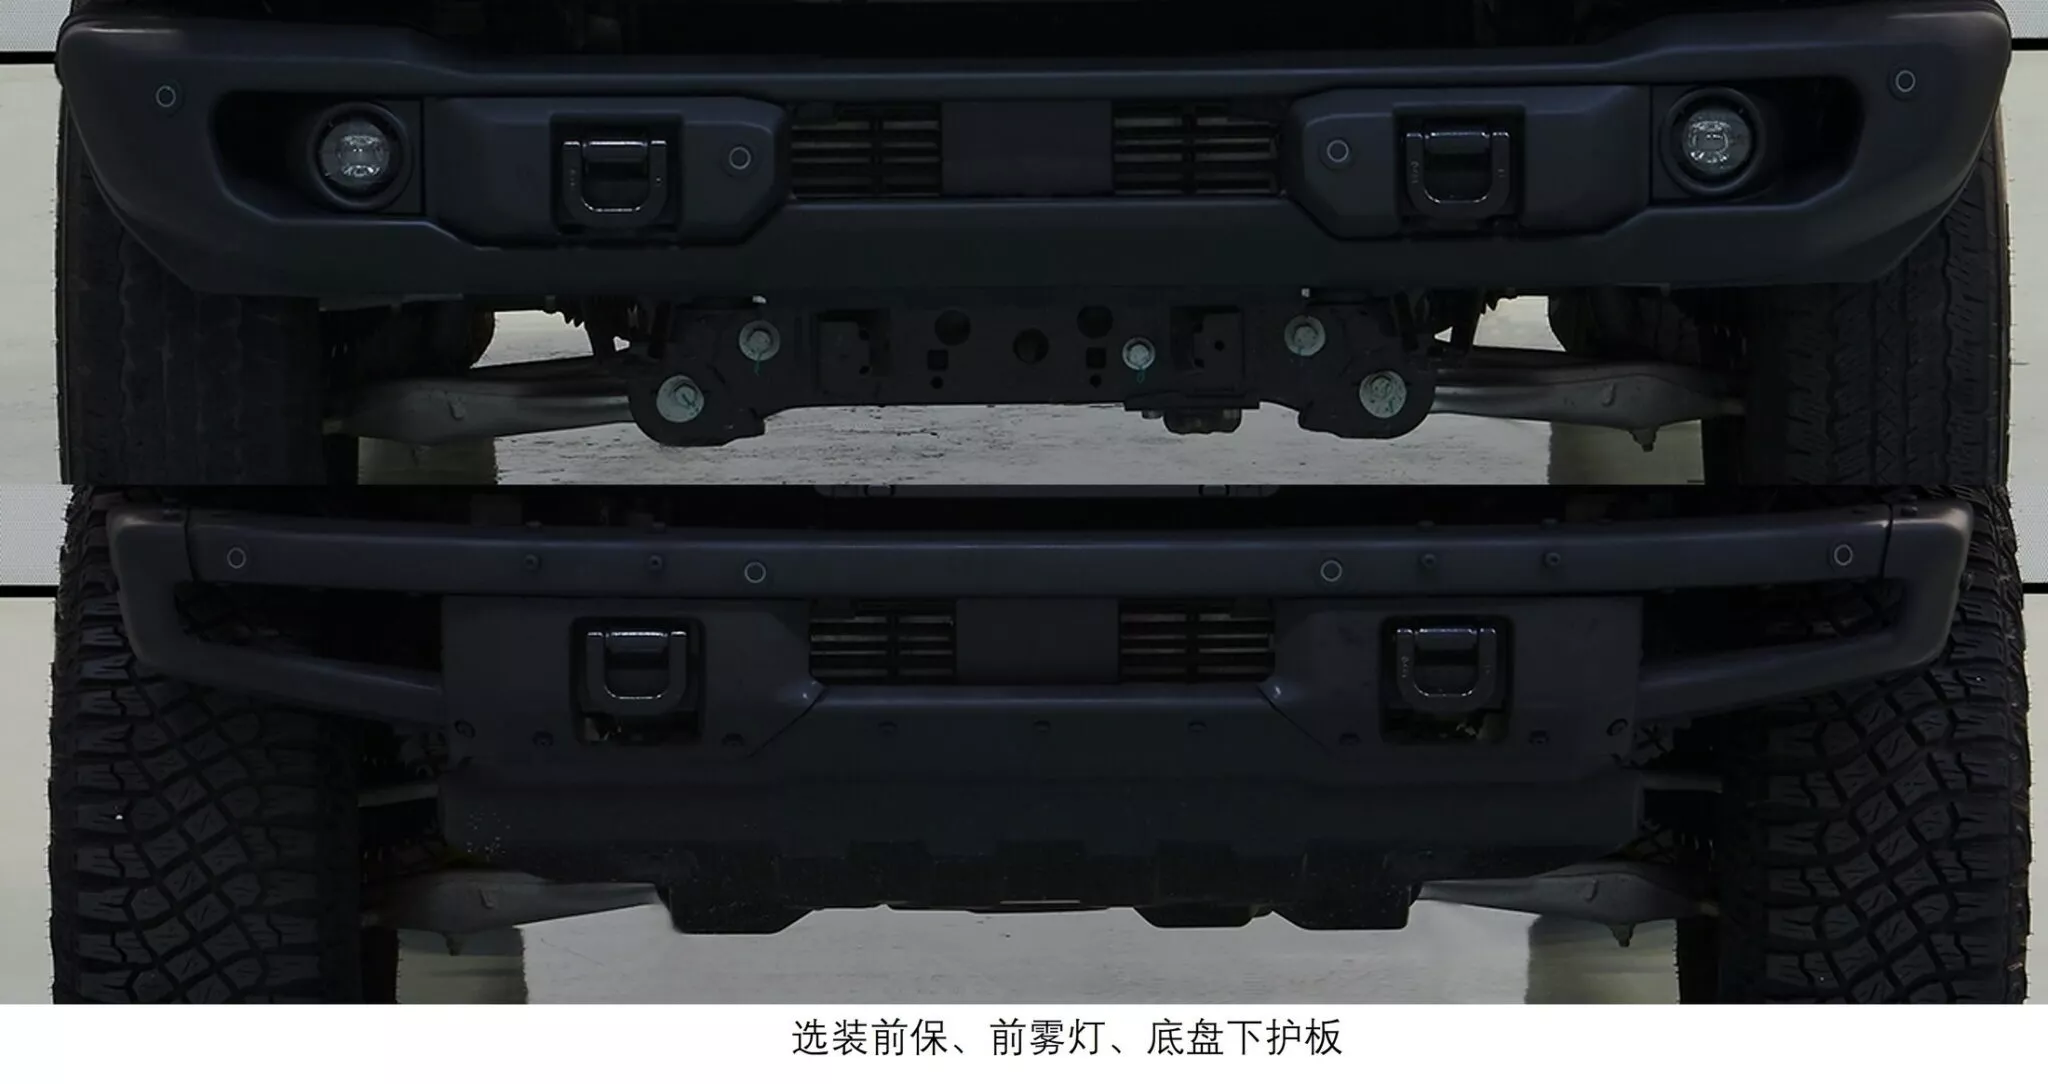 تسريب فورد برونكو النسخة الصينية بتحديثات خاصة ومحرك 2.3 لتر تيربو 3